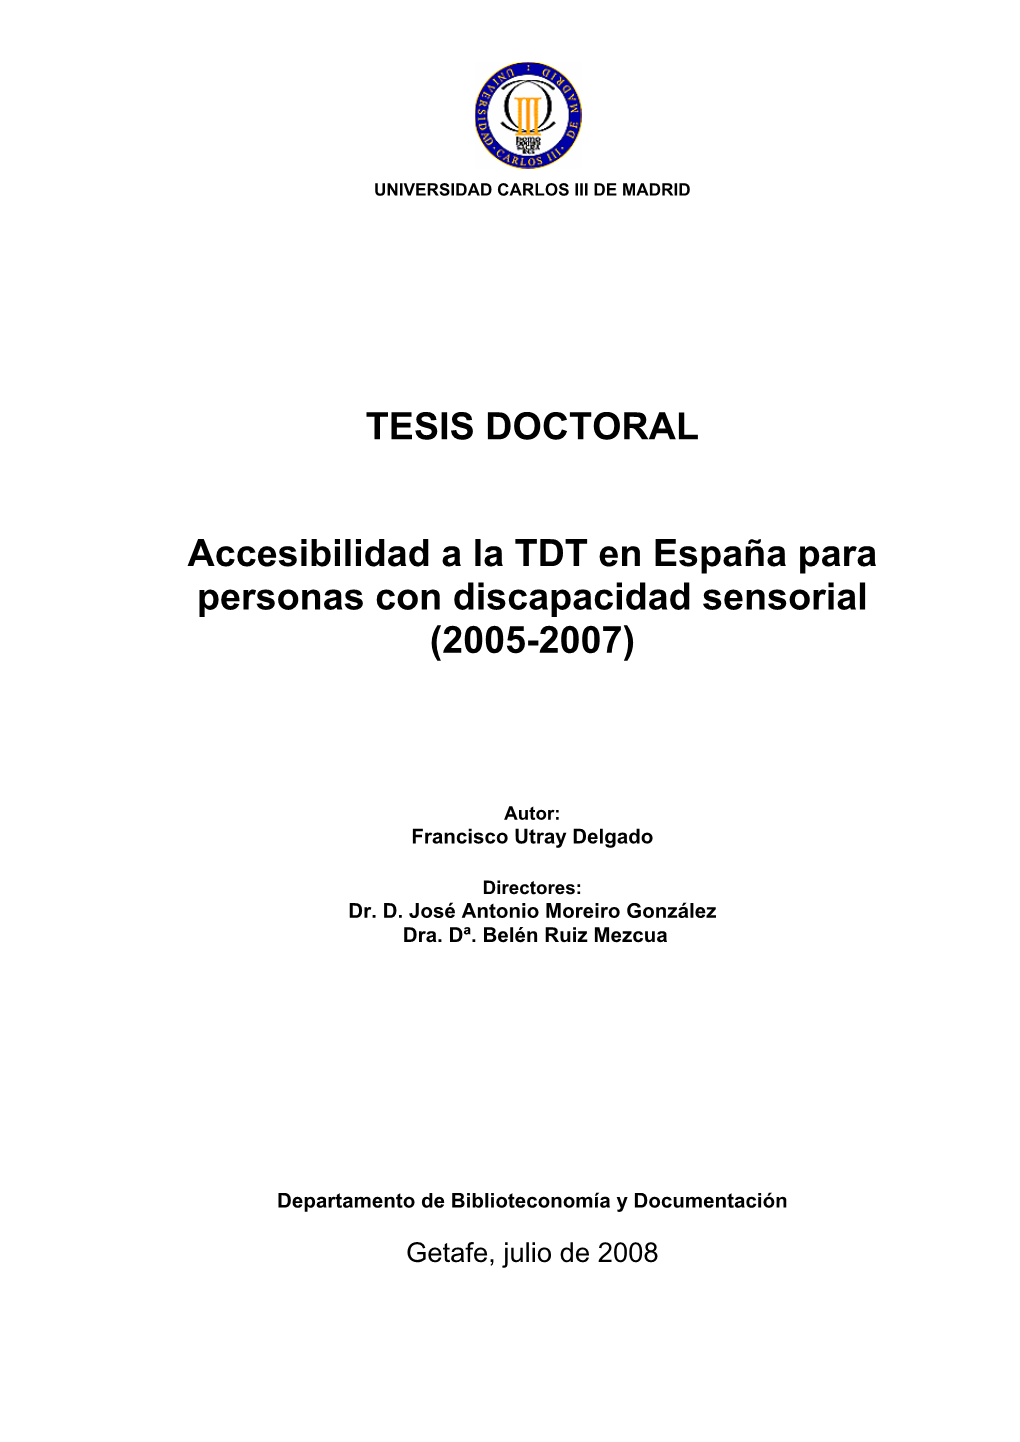 TESIS DOCTORAL Accesibilidad a La TDT En España Para